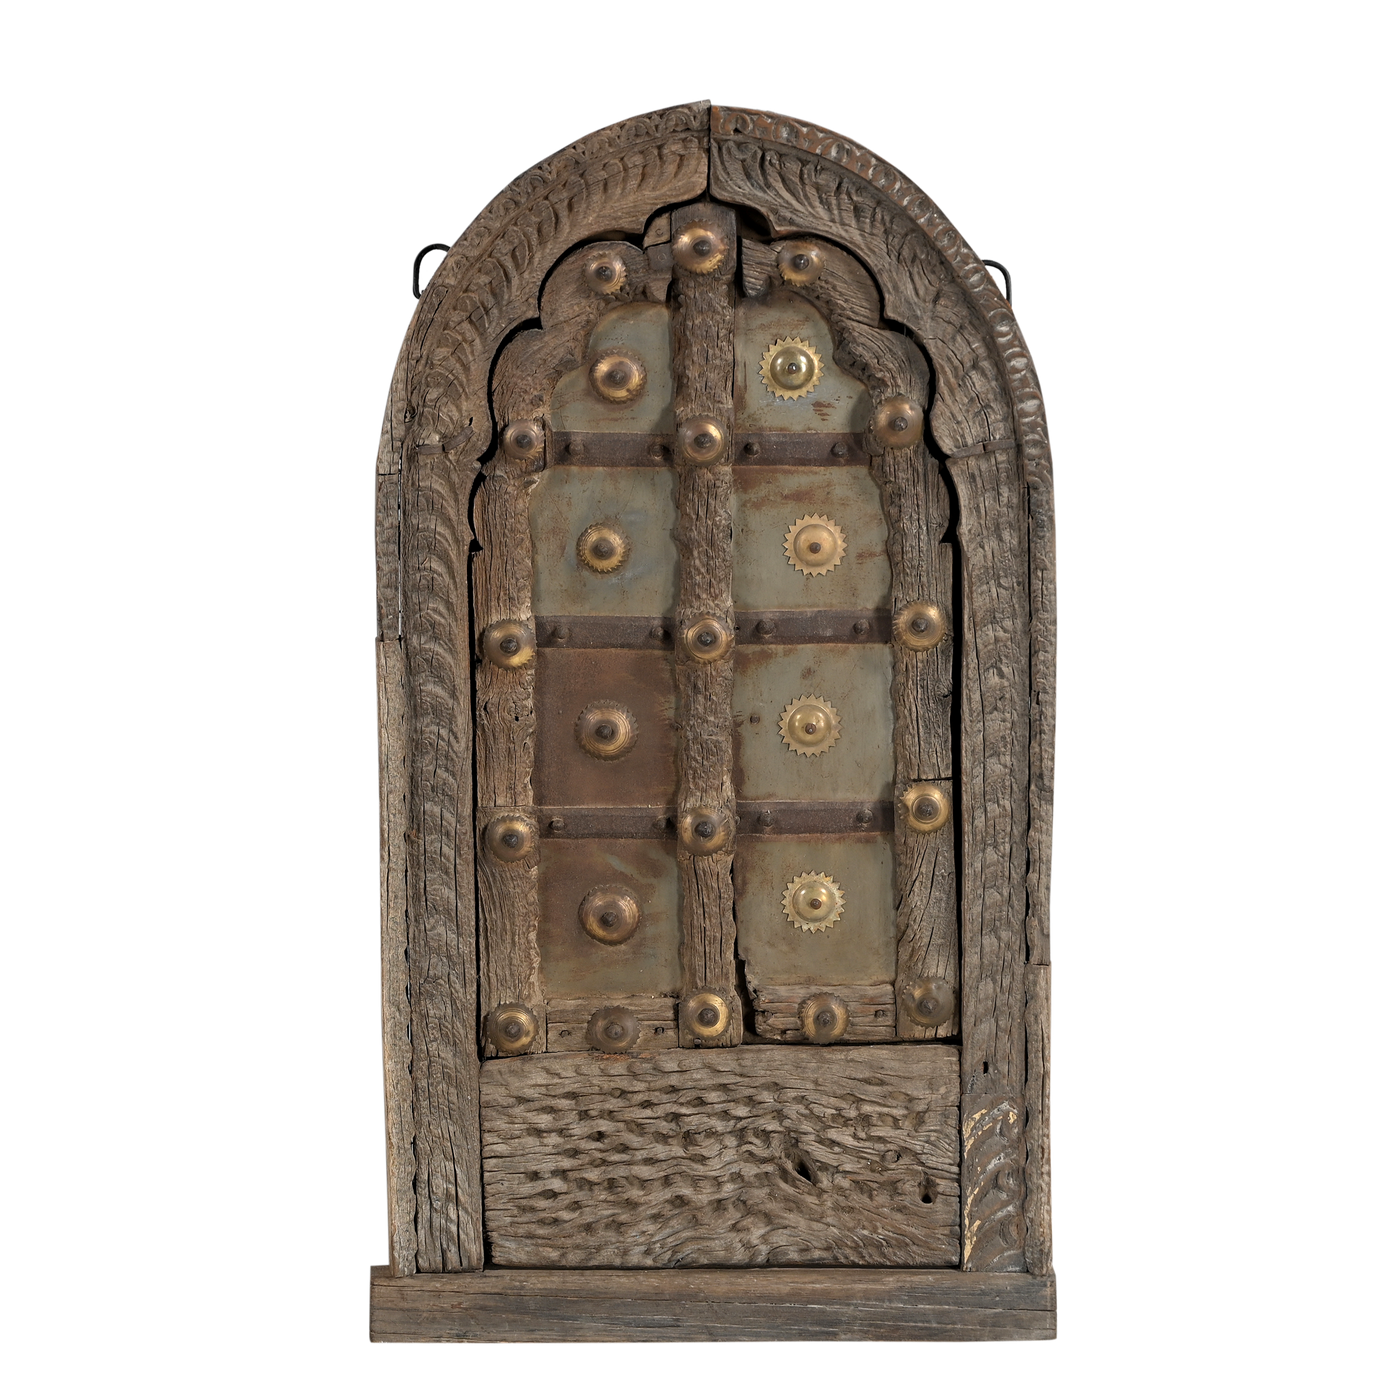 Khidaki - Ancient Indian window